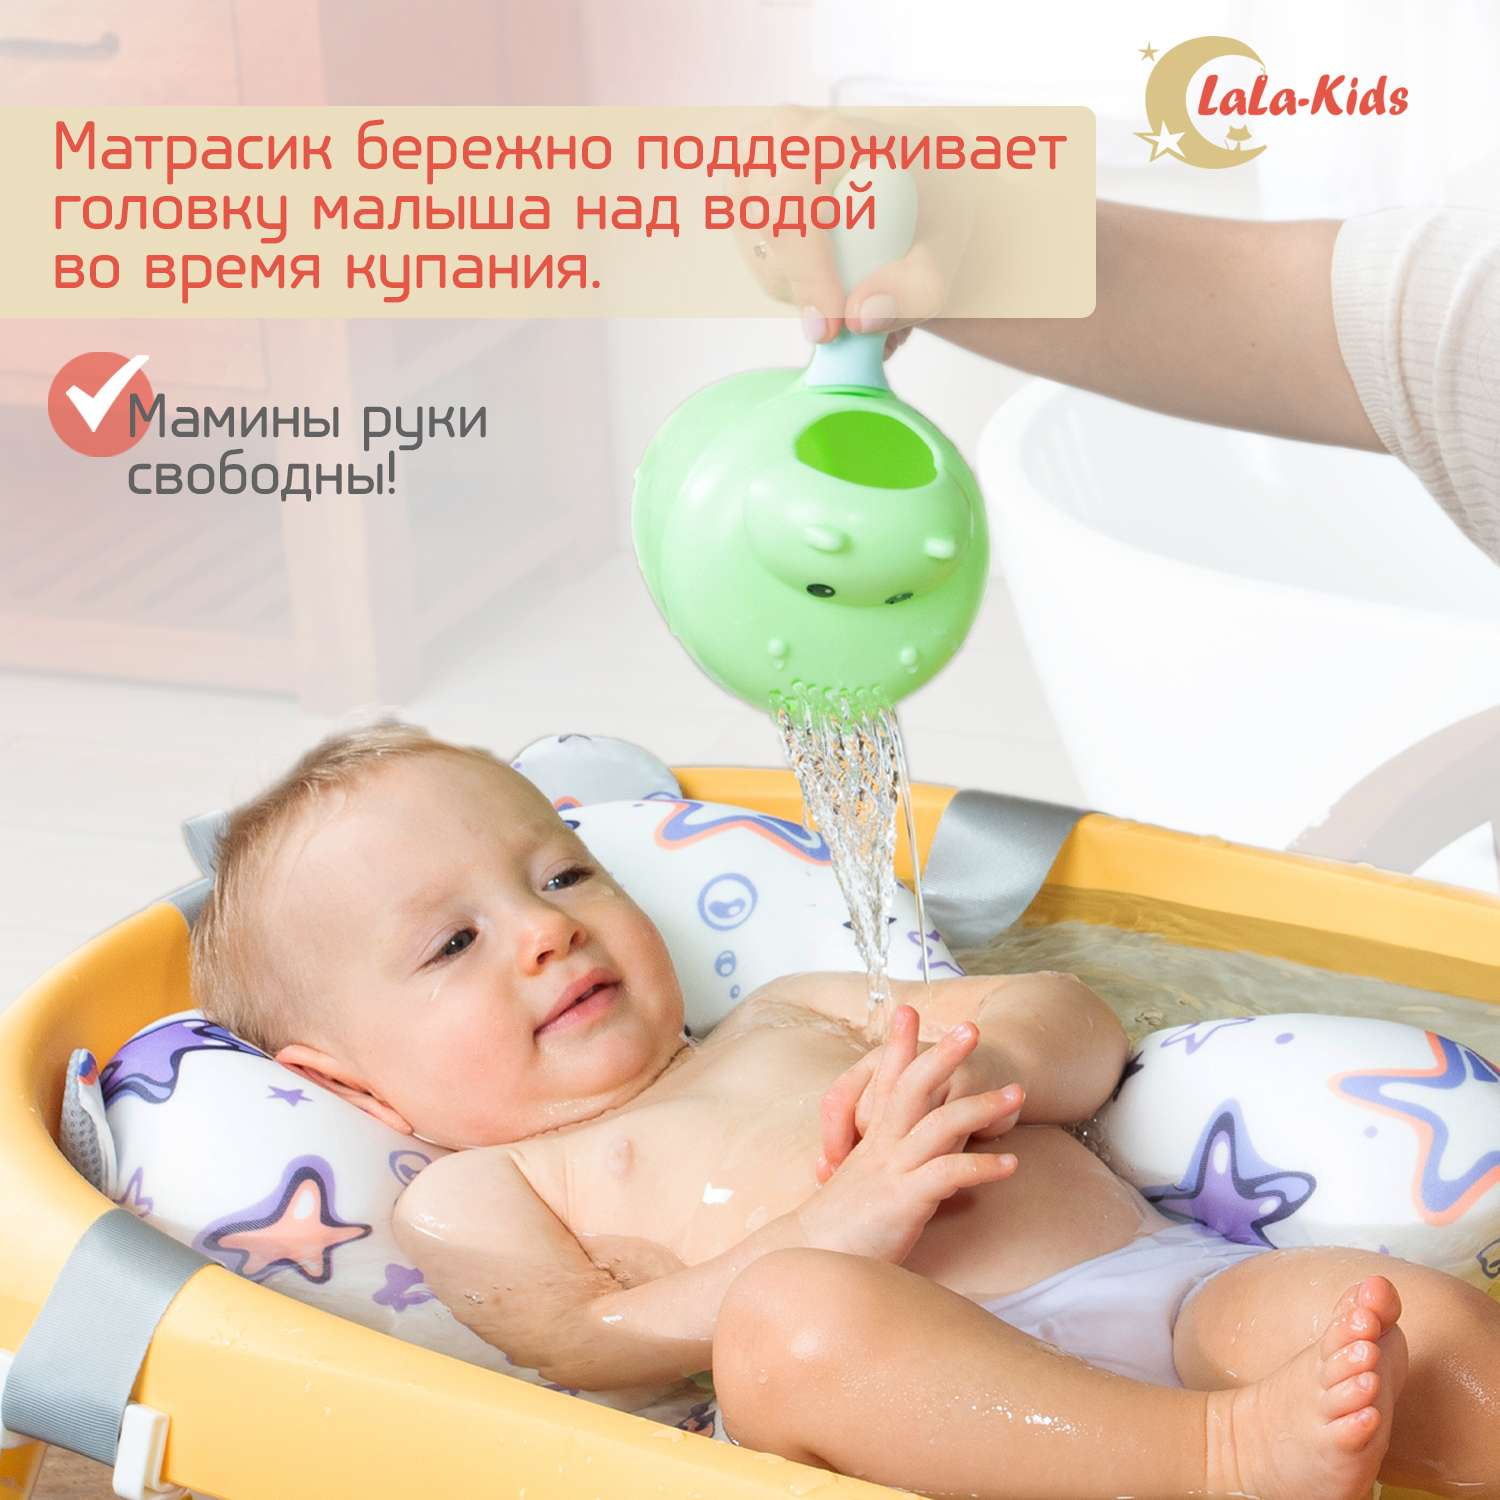 Детская ванночка LaLa-Kids складная с матрасиком для купания новорожденных - фото 4